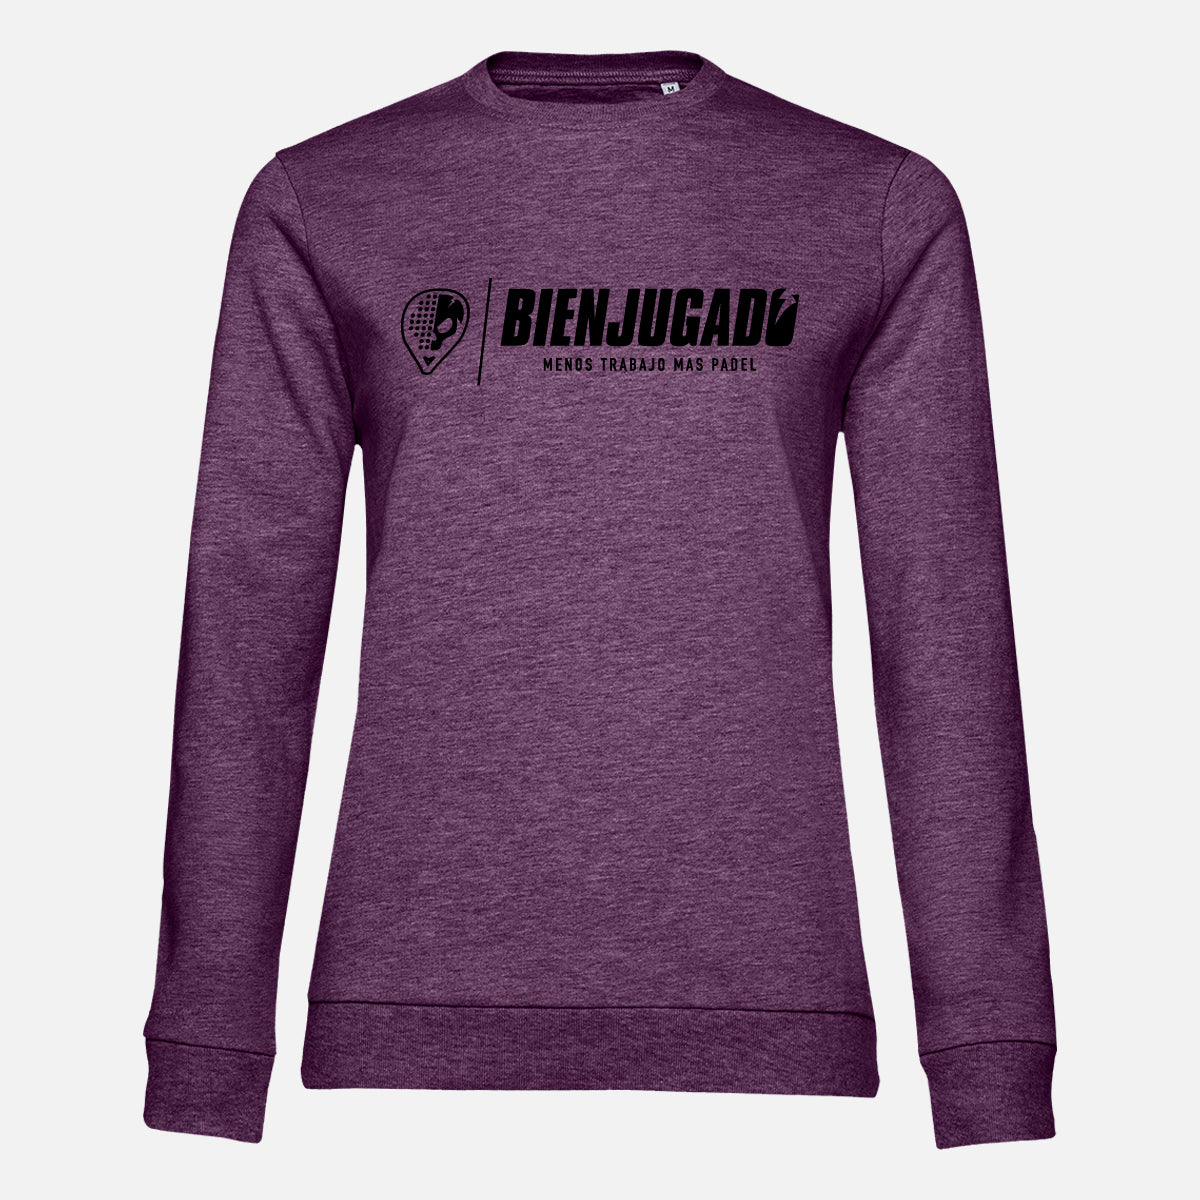 Women's Mid Season Round Neck Sweatshirt - Heather Purple